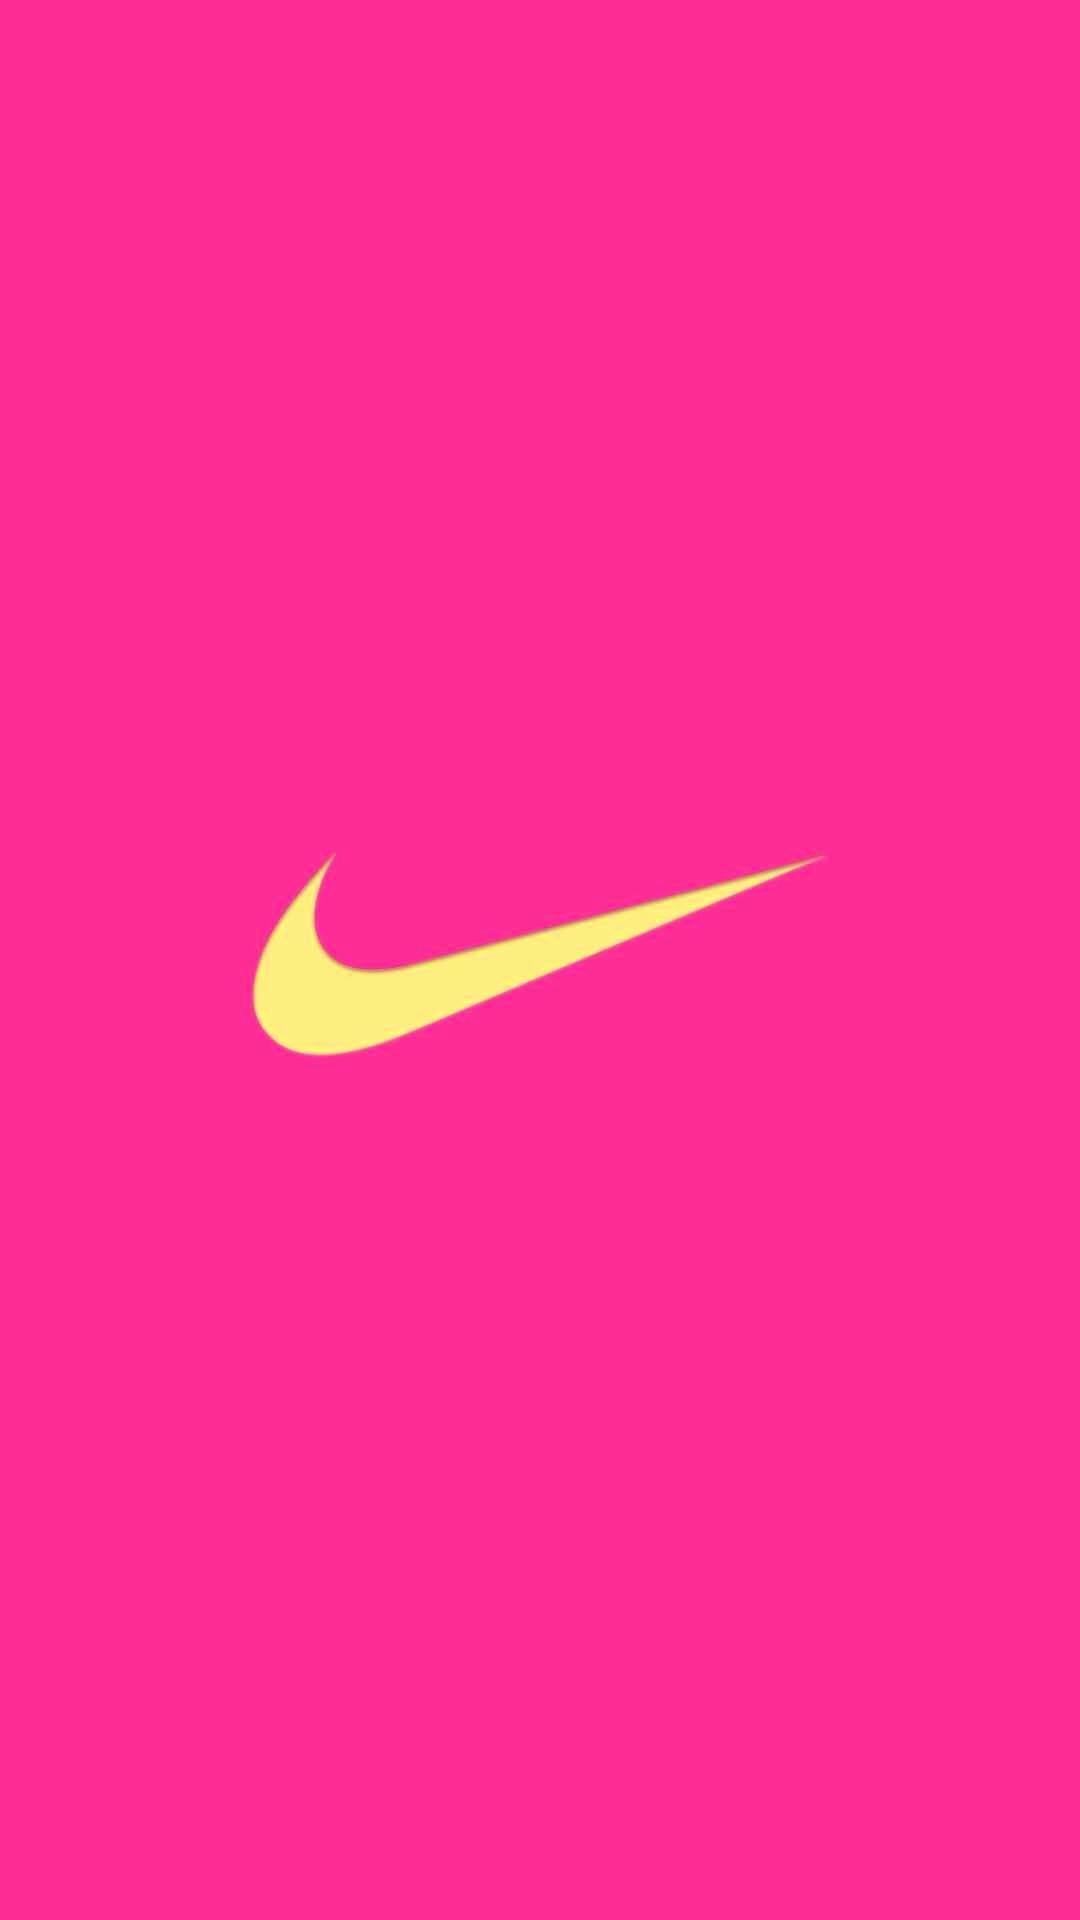 Pink Nike Logo Wallpapers - Top Free Pink Nike Logo Backgrounds ...